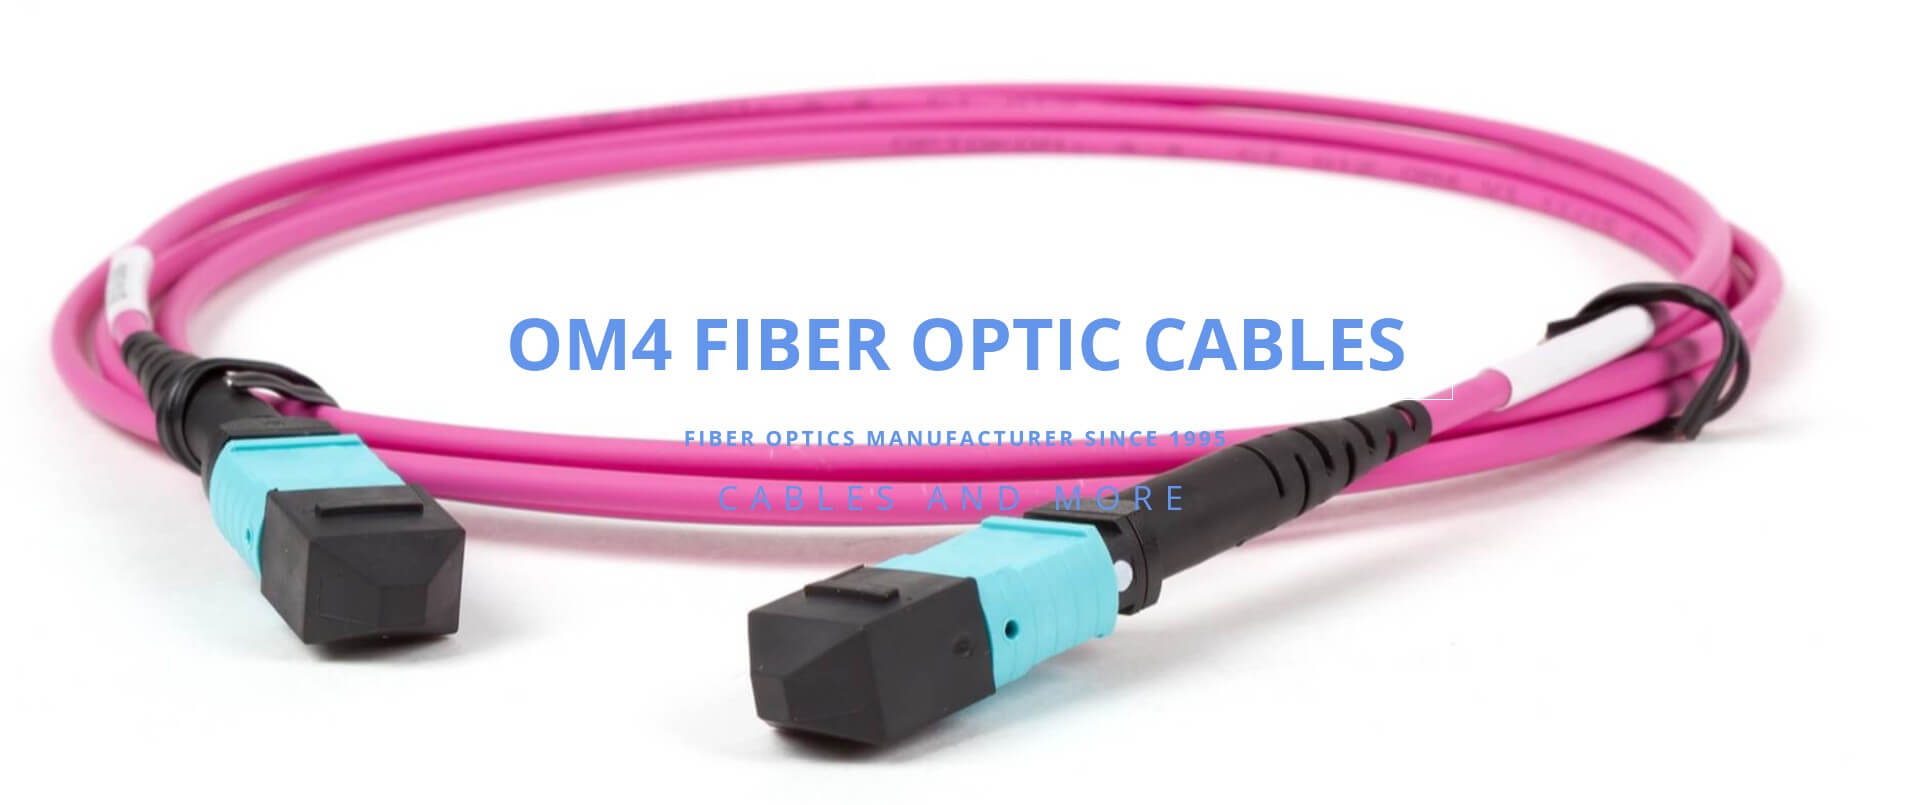 OM4 fiber cables